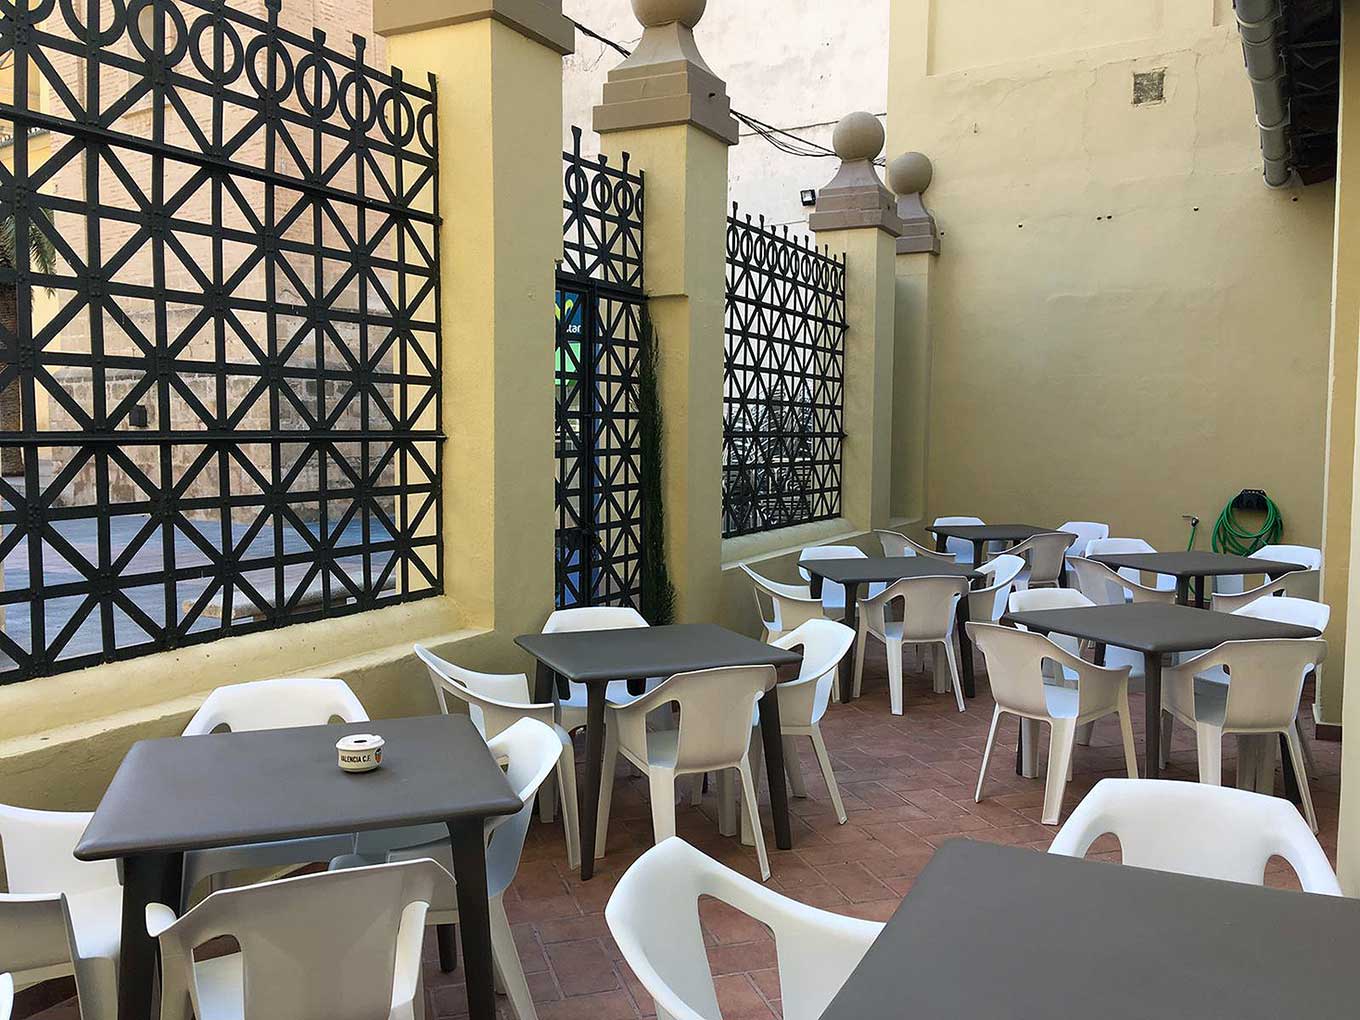 Local de hostelería en Sueca (Valencia)